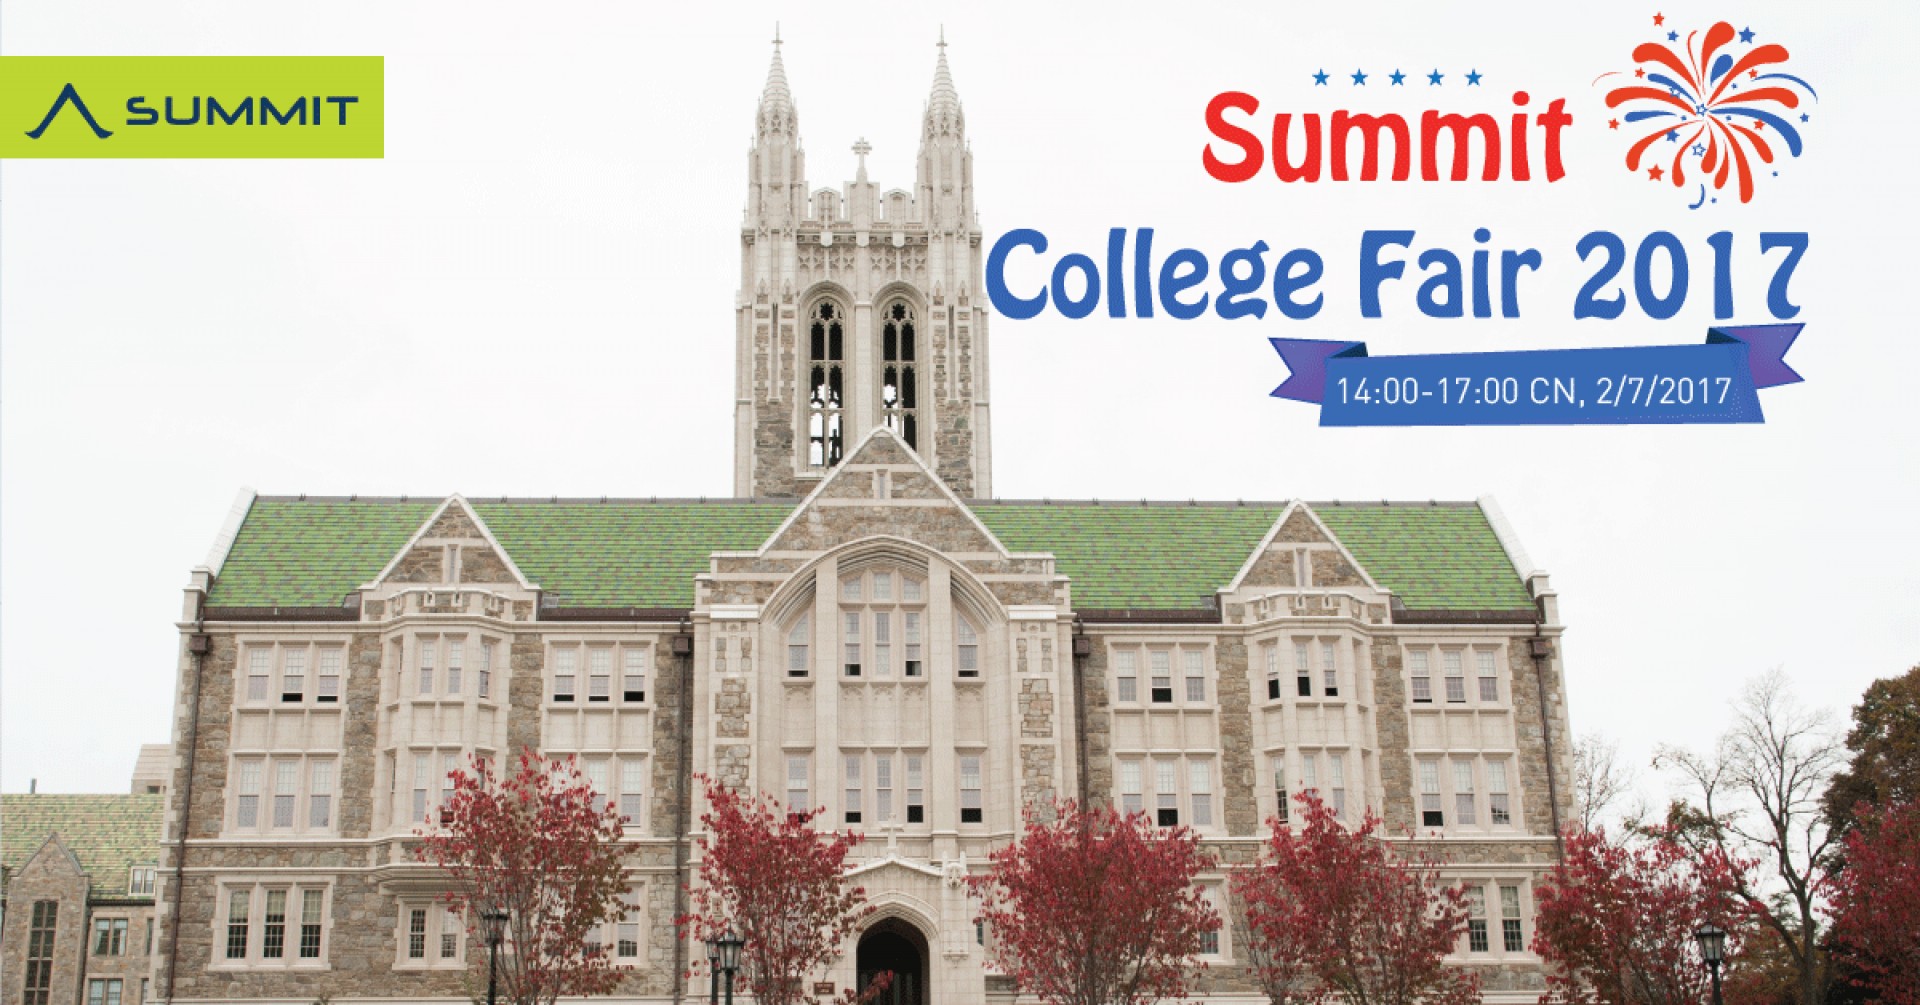 Cơ hội "đến thăm" hơn 50 trường đại học hàng đầu Mỹ tại Summit College Fair 2017